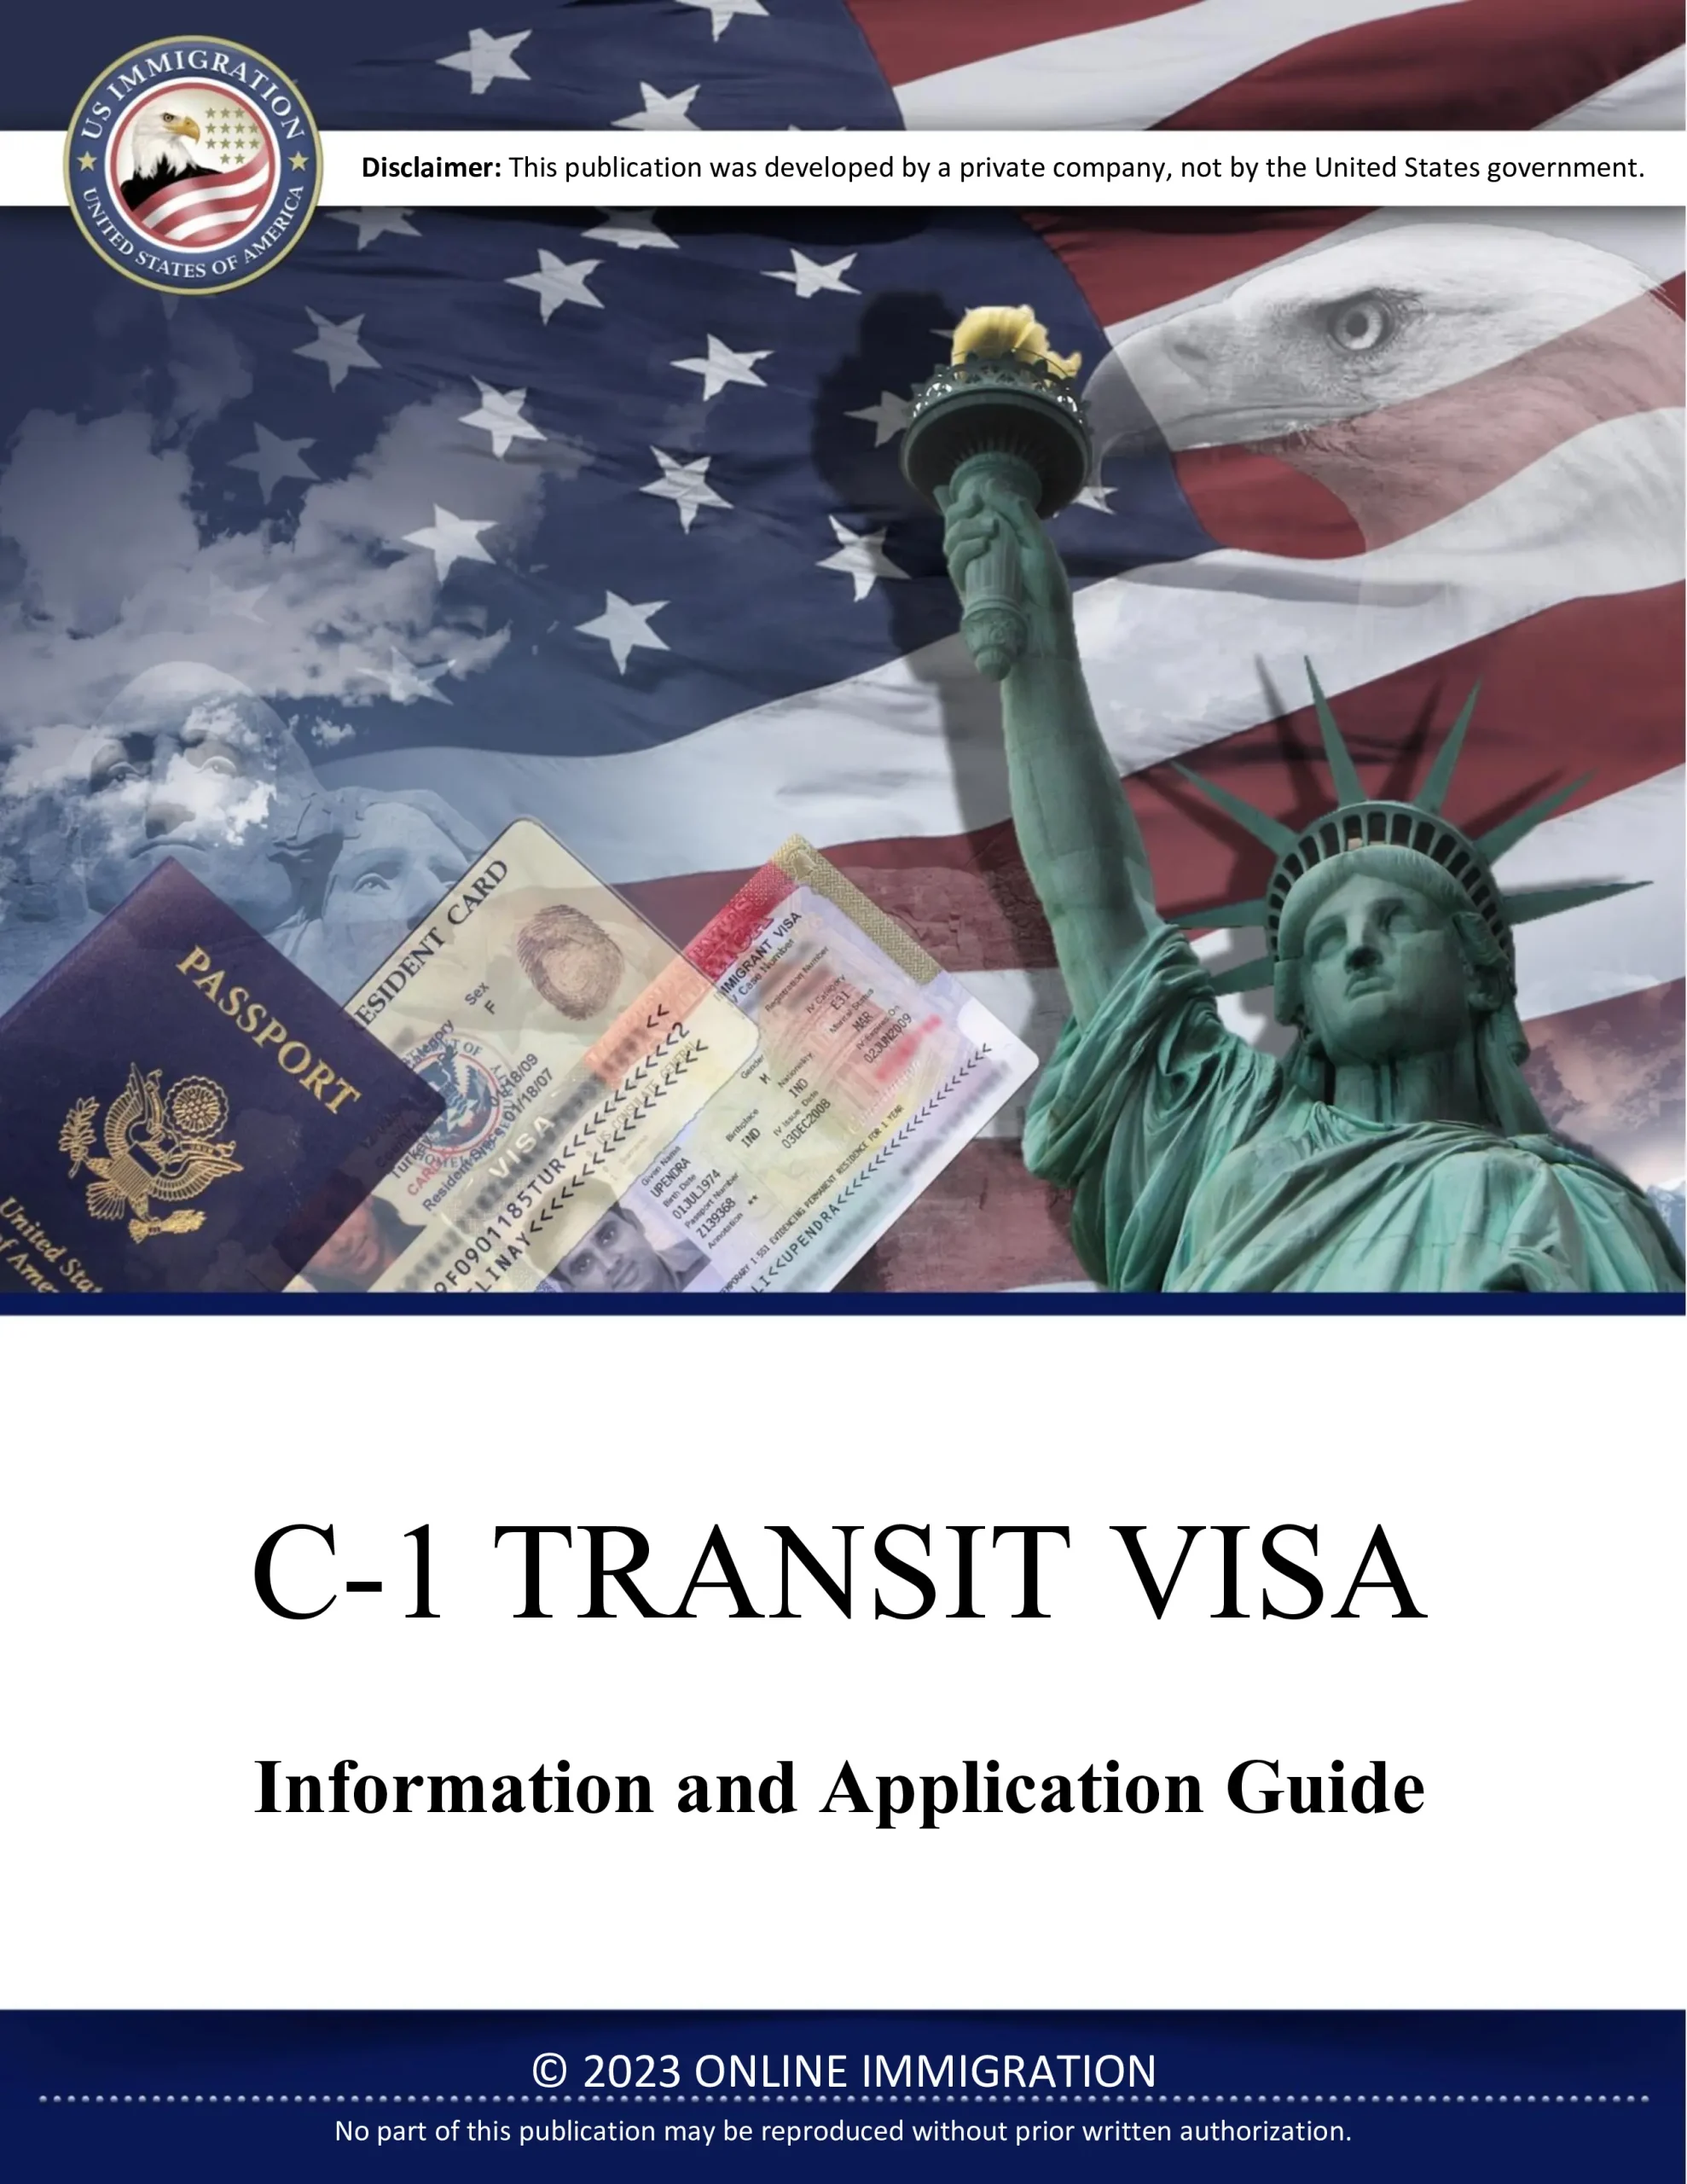 C-1 Transit Visa Application Guide